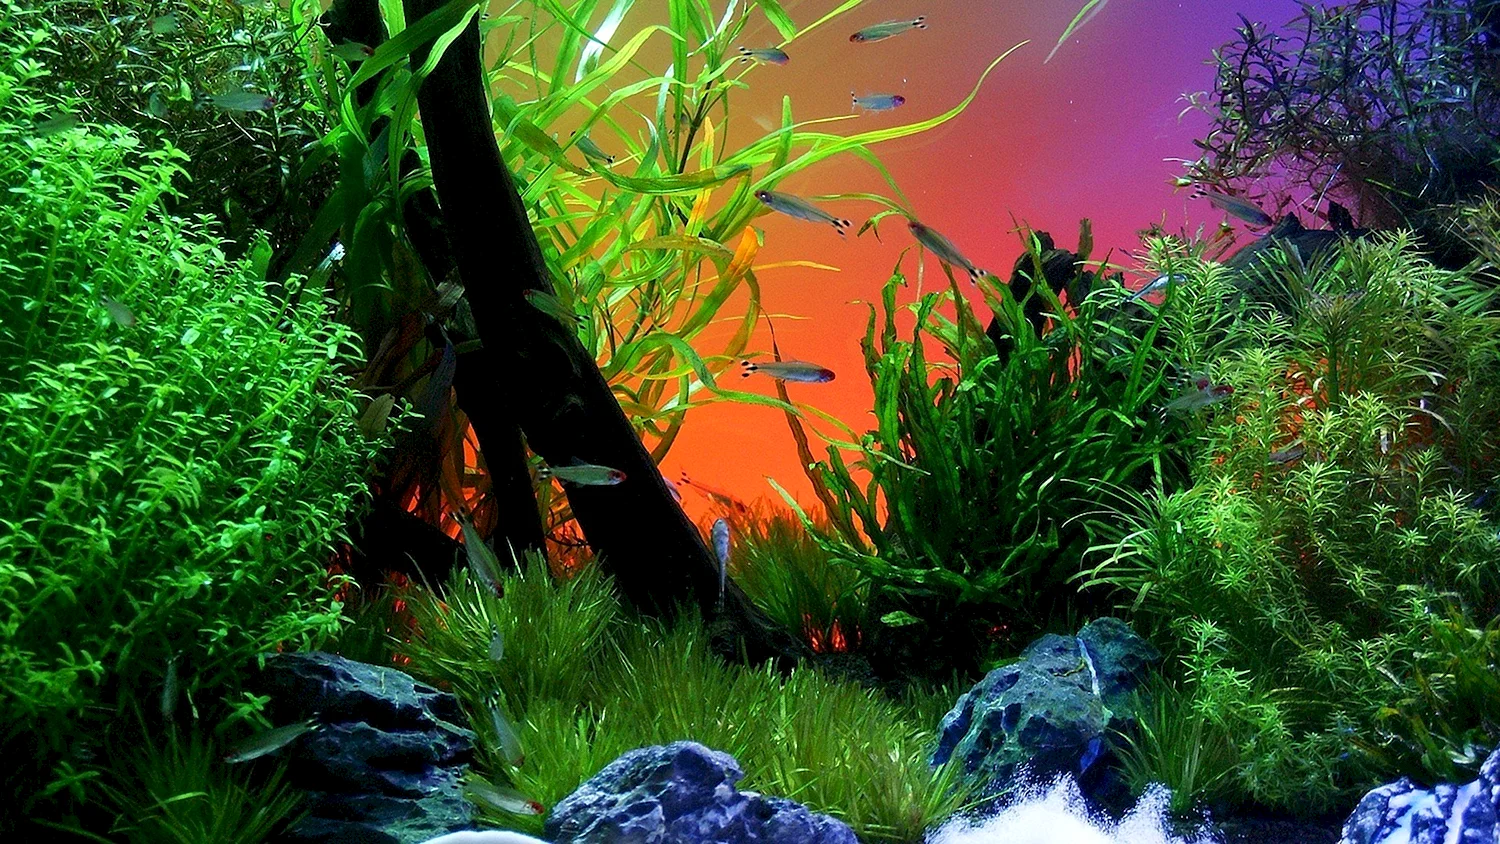 Аквариум травник голландский аквариум